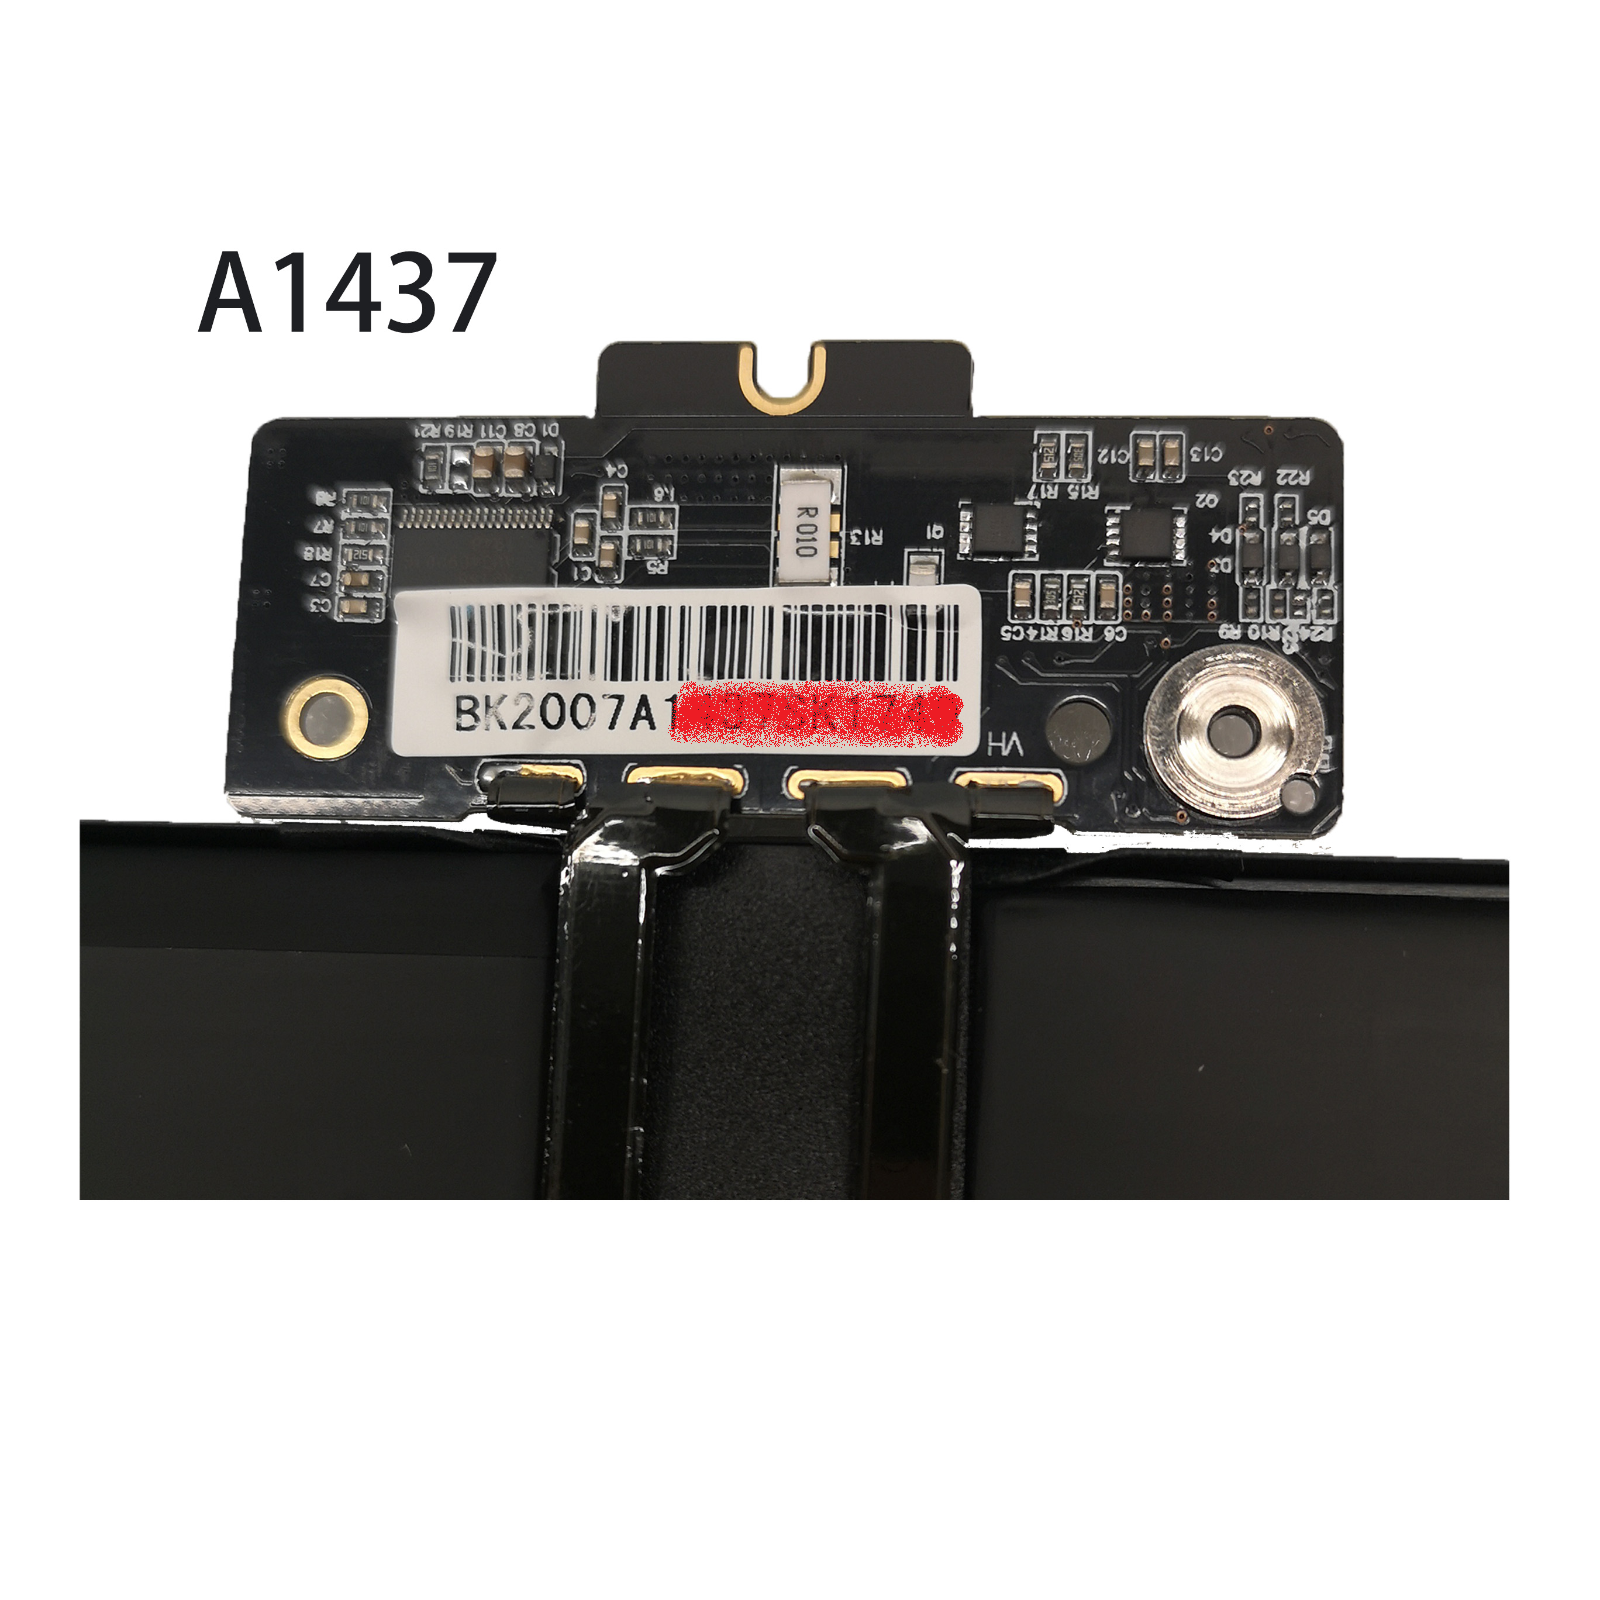 μπαταρία για A1437 A1425 APPLE MacBook Pro 13 inch Retina Late 2012 Early 2013 συμβιβάσιμος